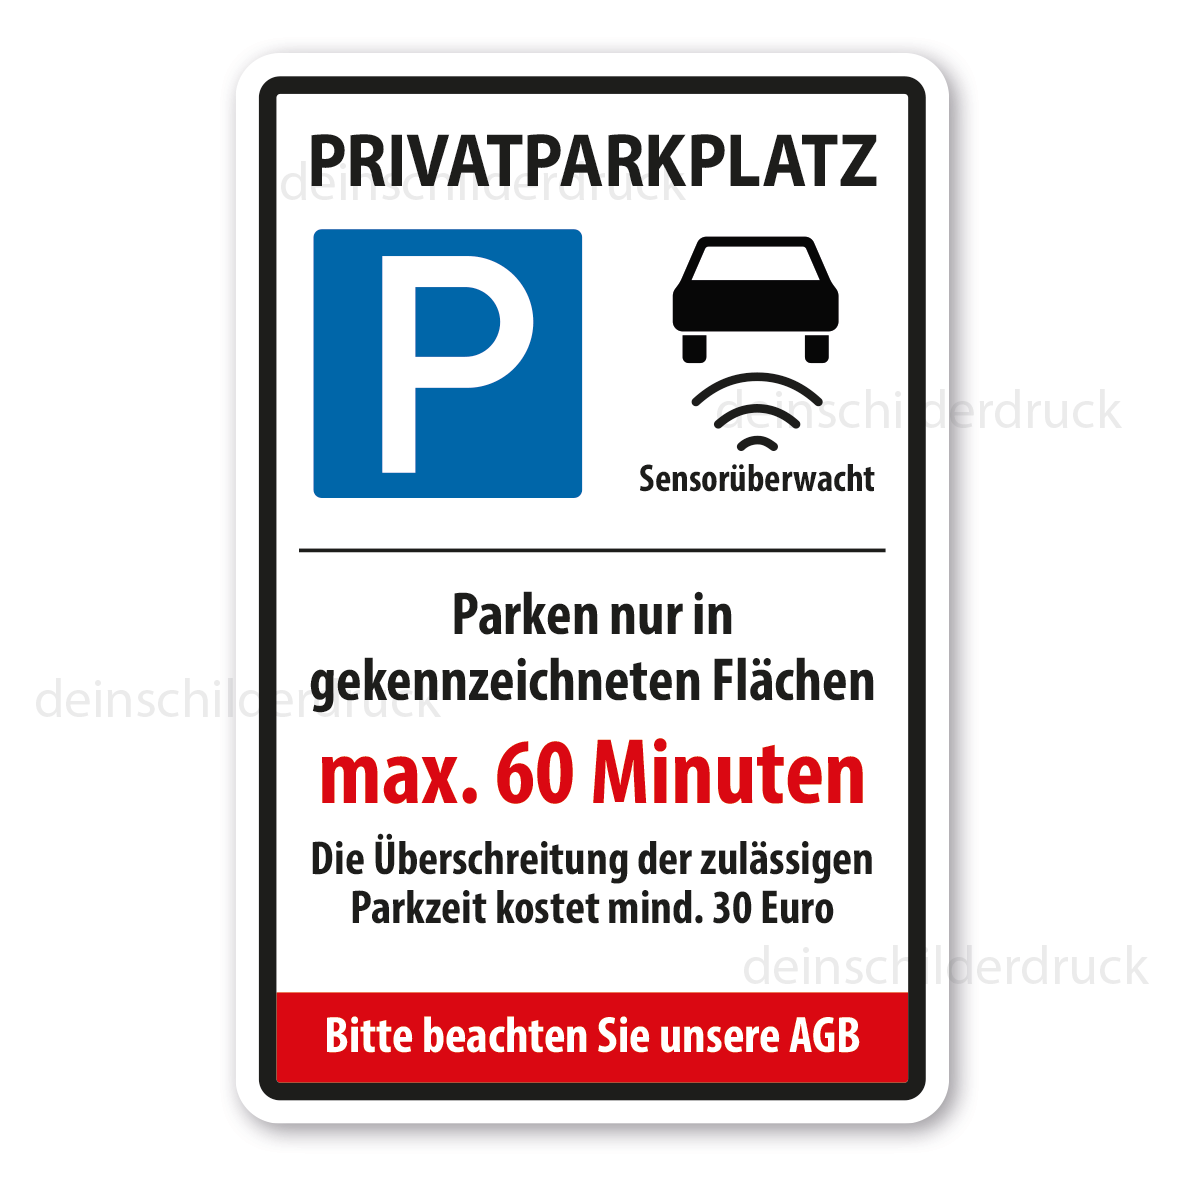 https://www.shop.onk.de/media/image/5a/df/e7/VZ-K-133-Privatparkplatz-Sensoruberwacht-Parken-nur-in-gekennzeichnetten-Flachen-400-x-600-mm.png